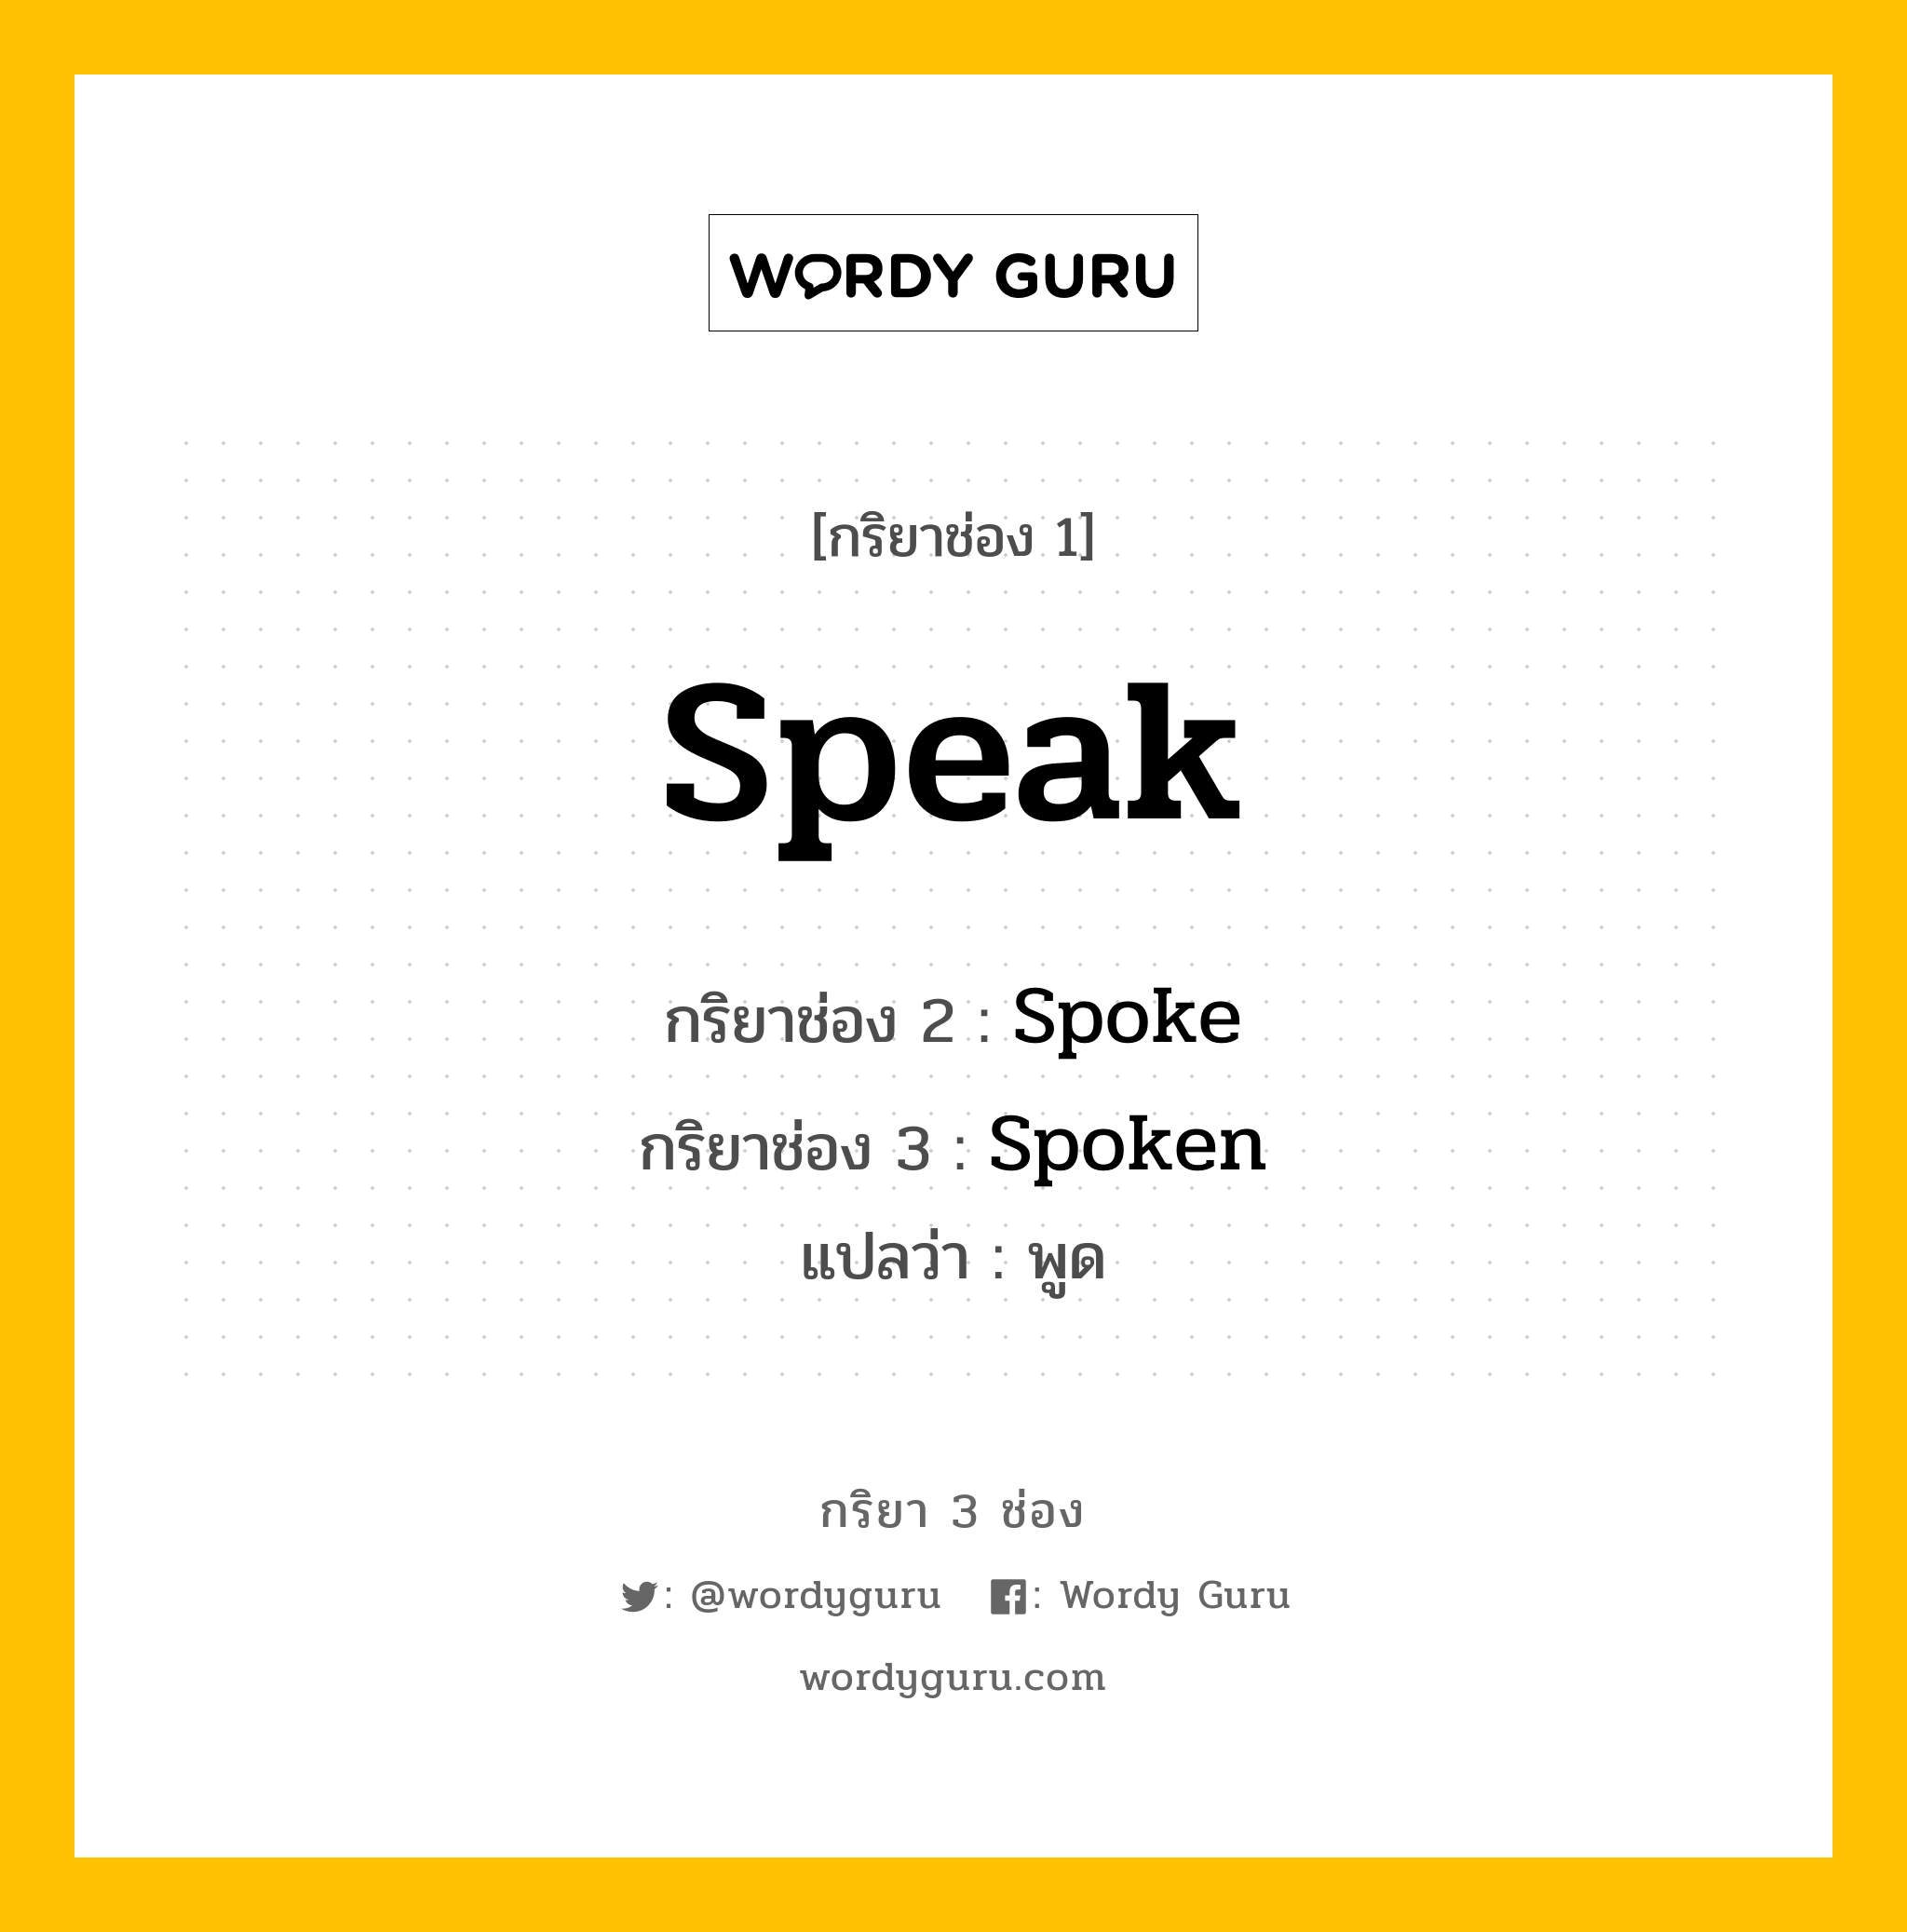 กริยา 3 ช่อง: Speak ช่อง 2 Speak ช่อง 3 คืออะไร, กริยาช่อง 1 Speak กริยาช่อง 2 Spoke กริยาช่อง 3 Spoken แปลว่า พูด หมวด Irregular Verb